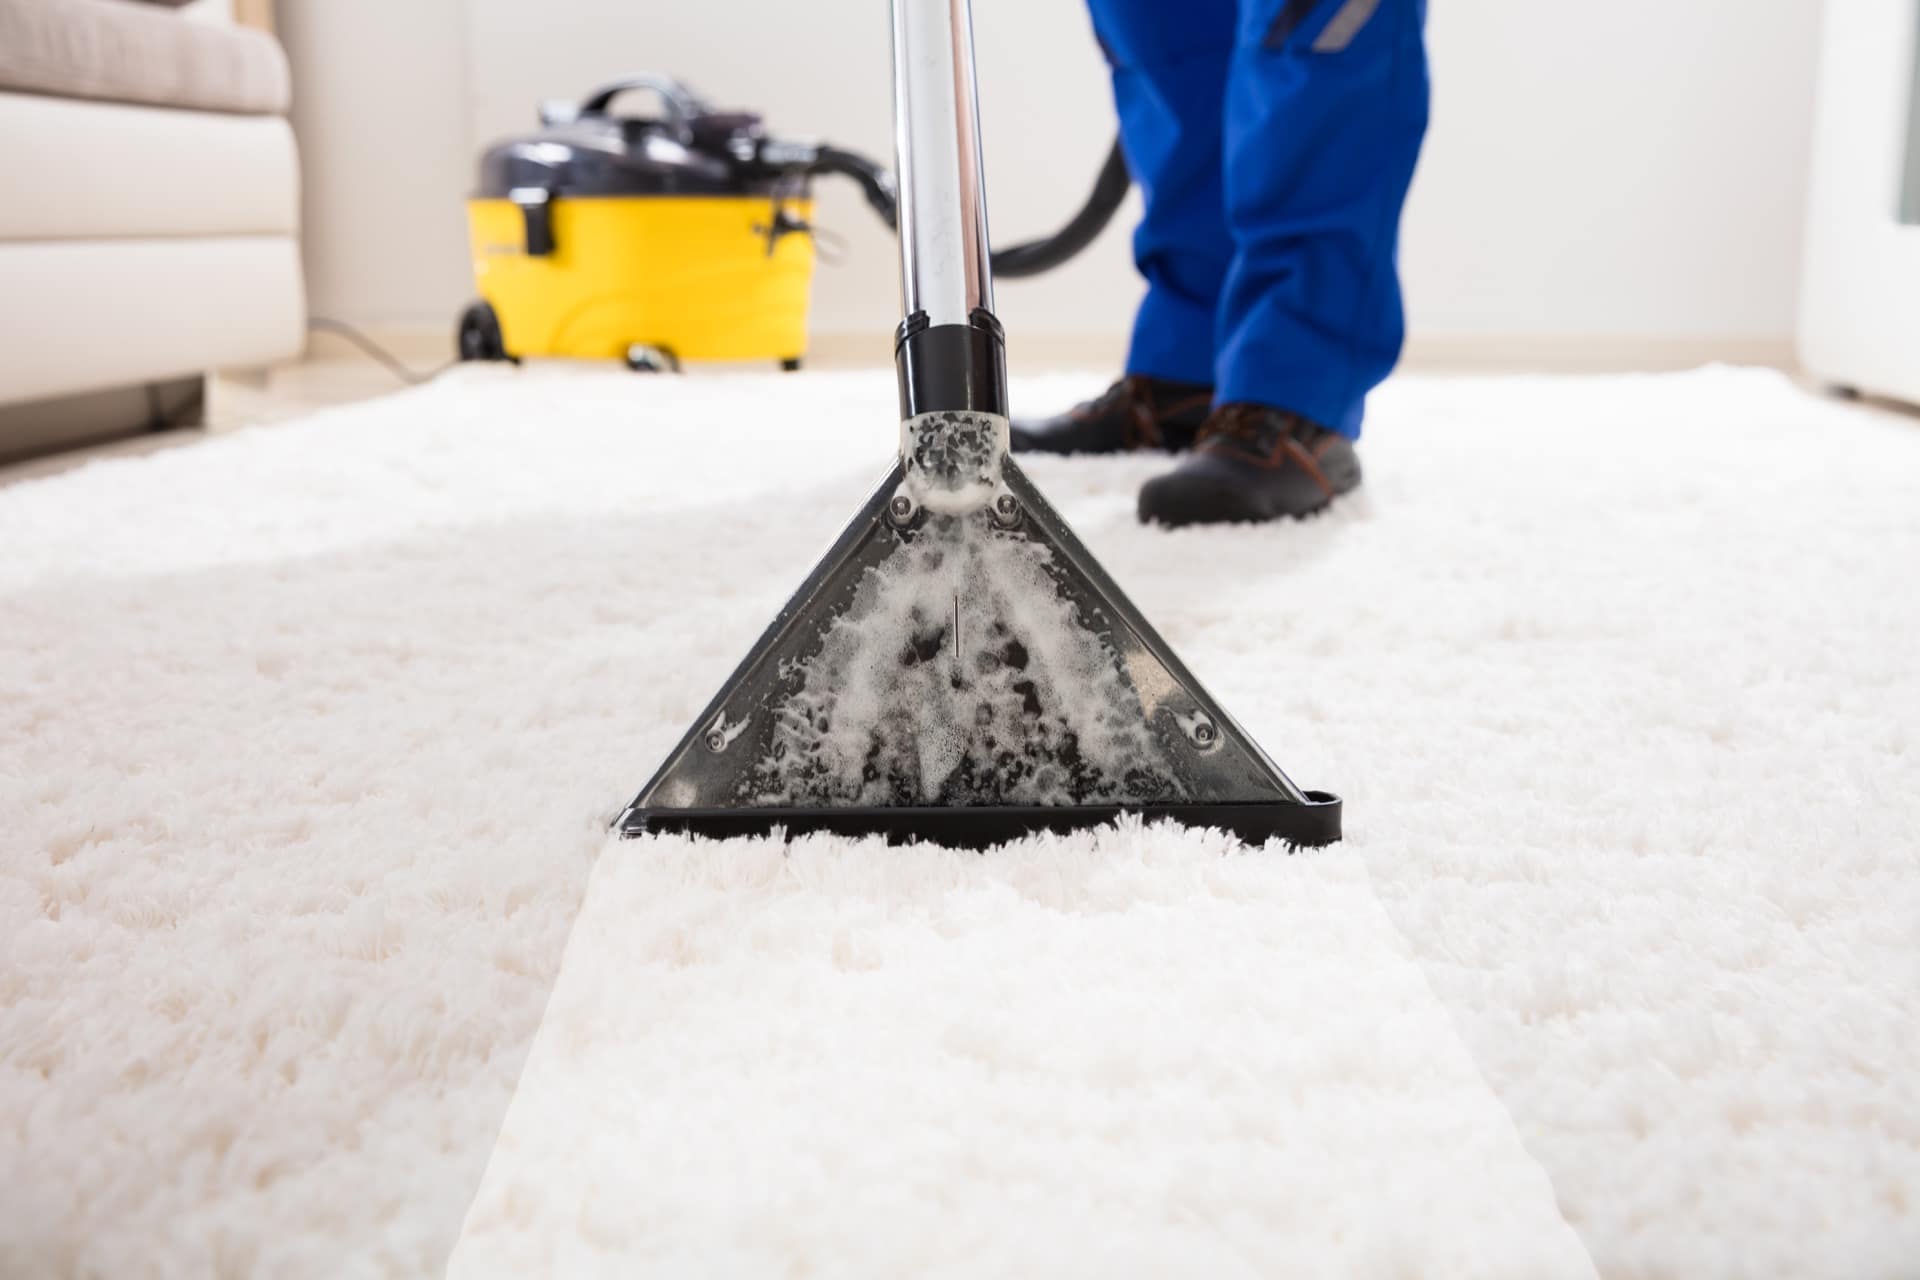 Teppichreinigung, Teppichbodenreinigung - Reinheit in jeder Faser, dieses Ergebnis erhalten Sie durch unsere professionelle Teppichreinigung. - Teppichreinigung - Angebot anfragen!